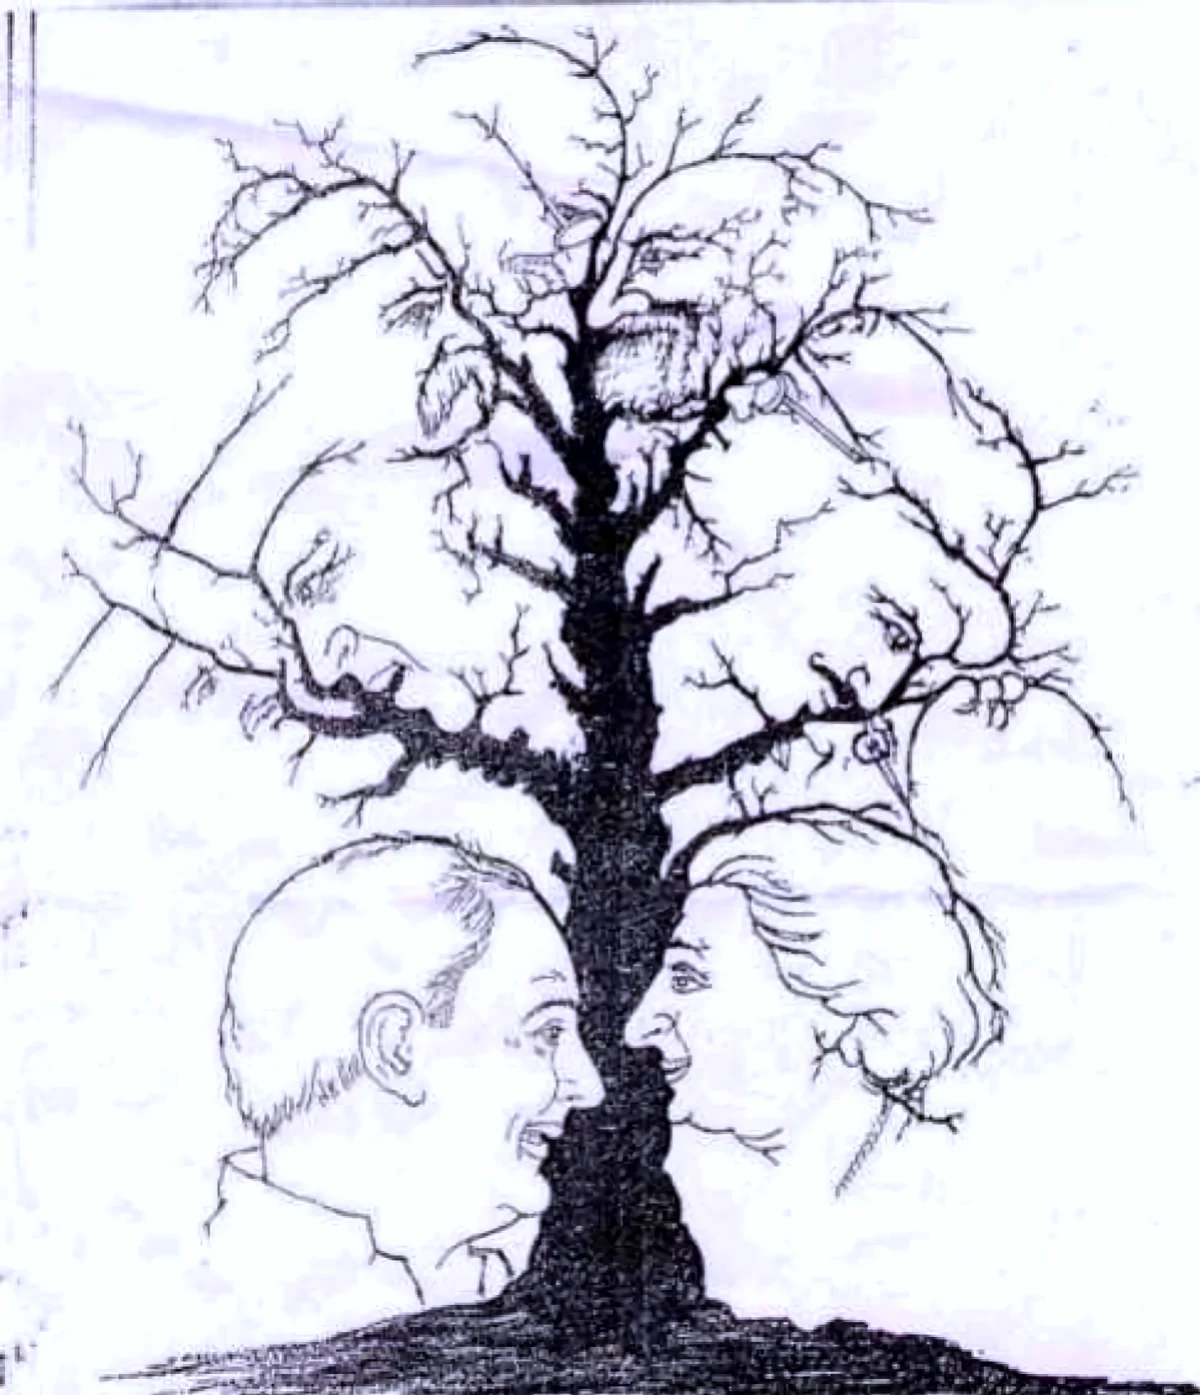 test d illusion otpique arbres avec des visages